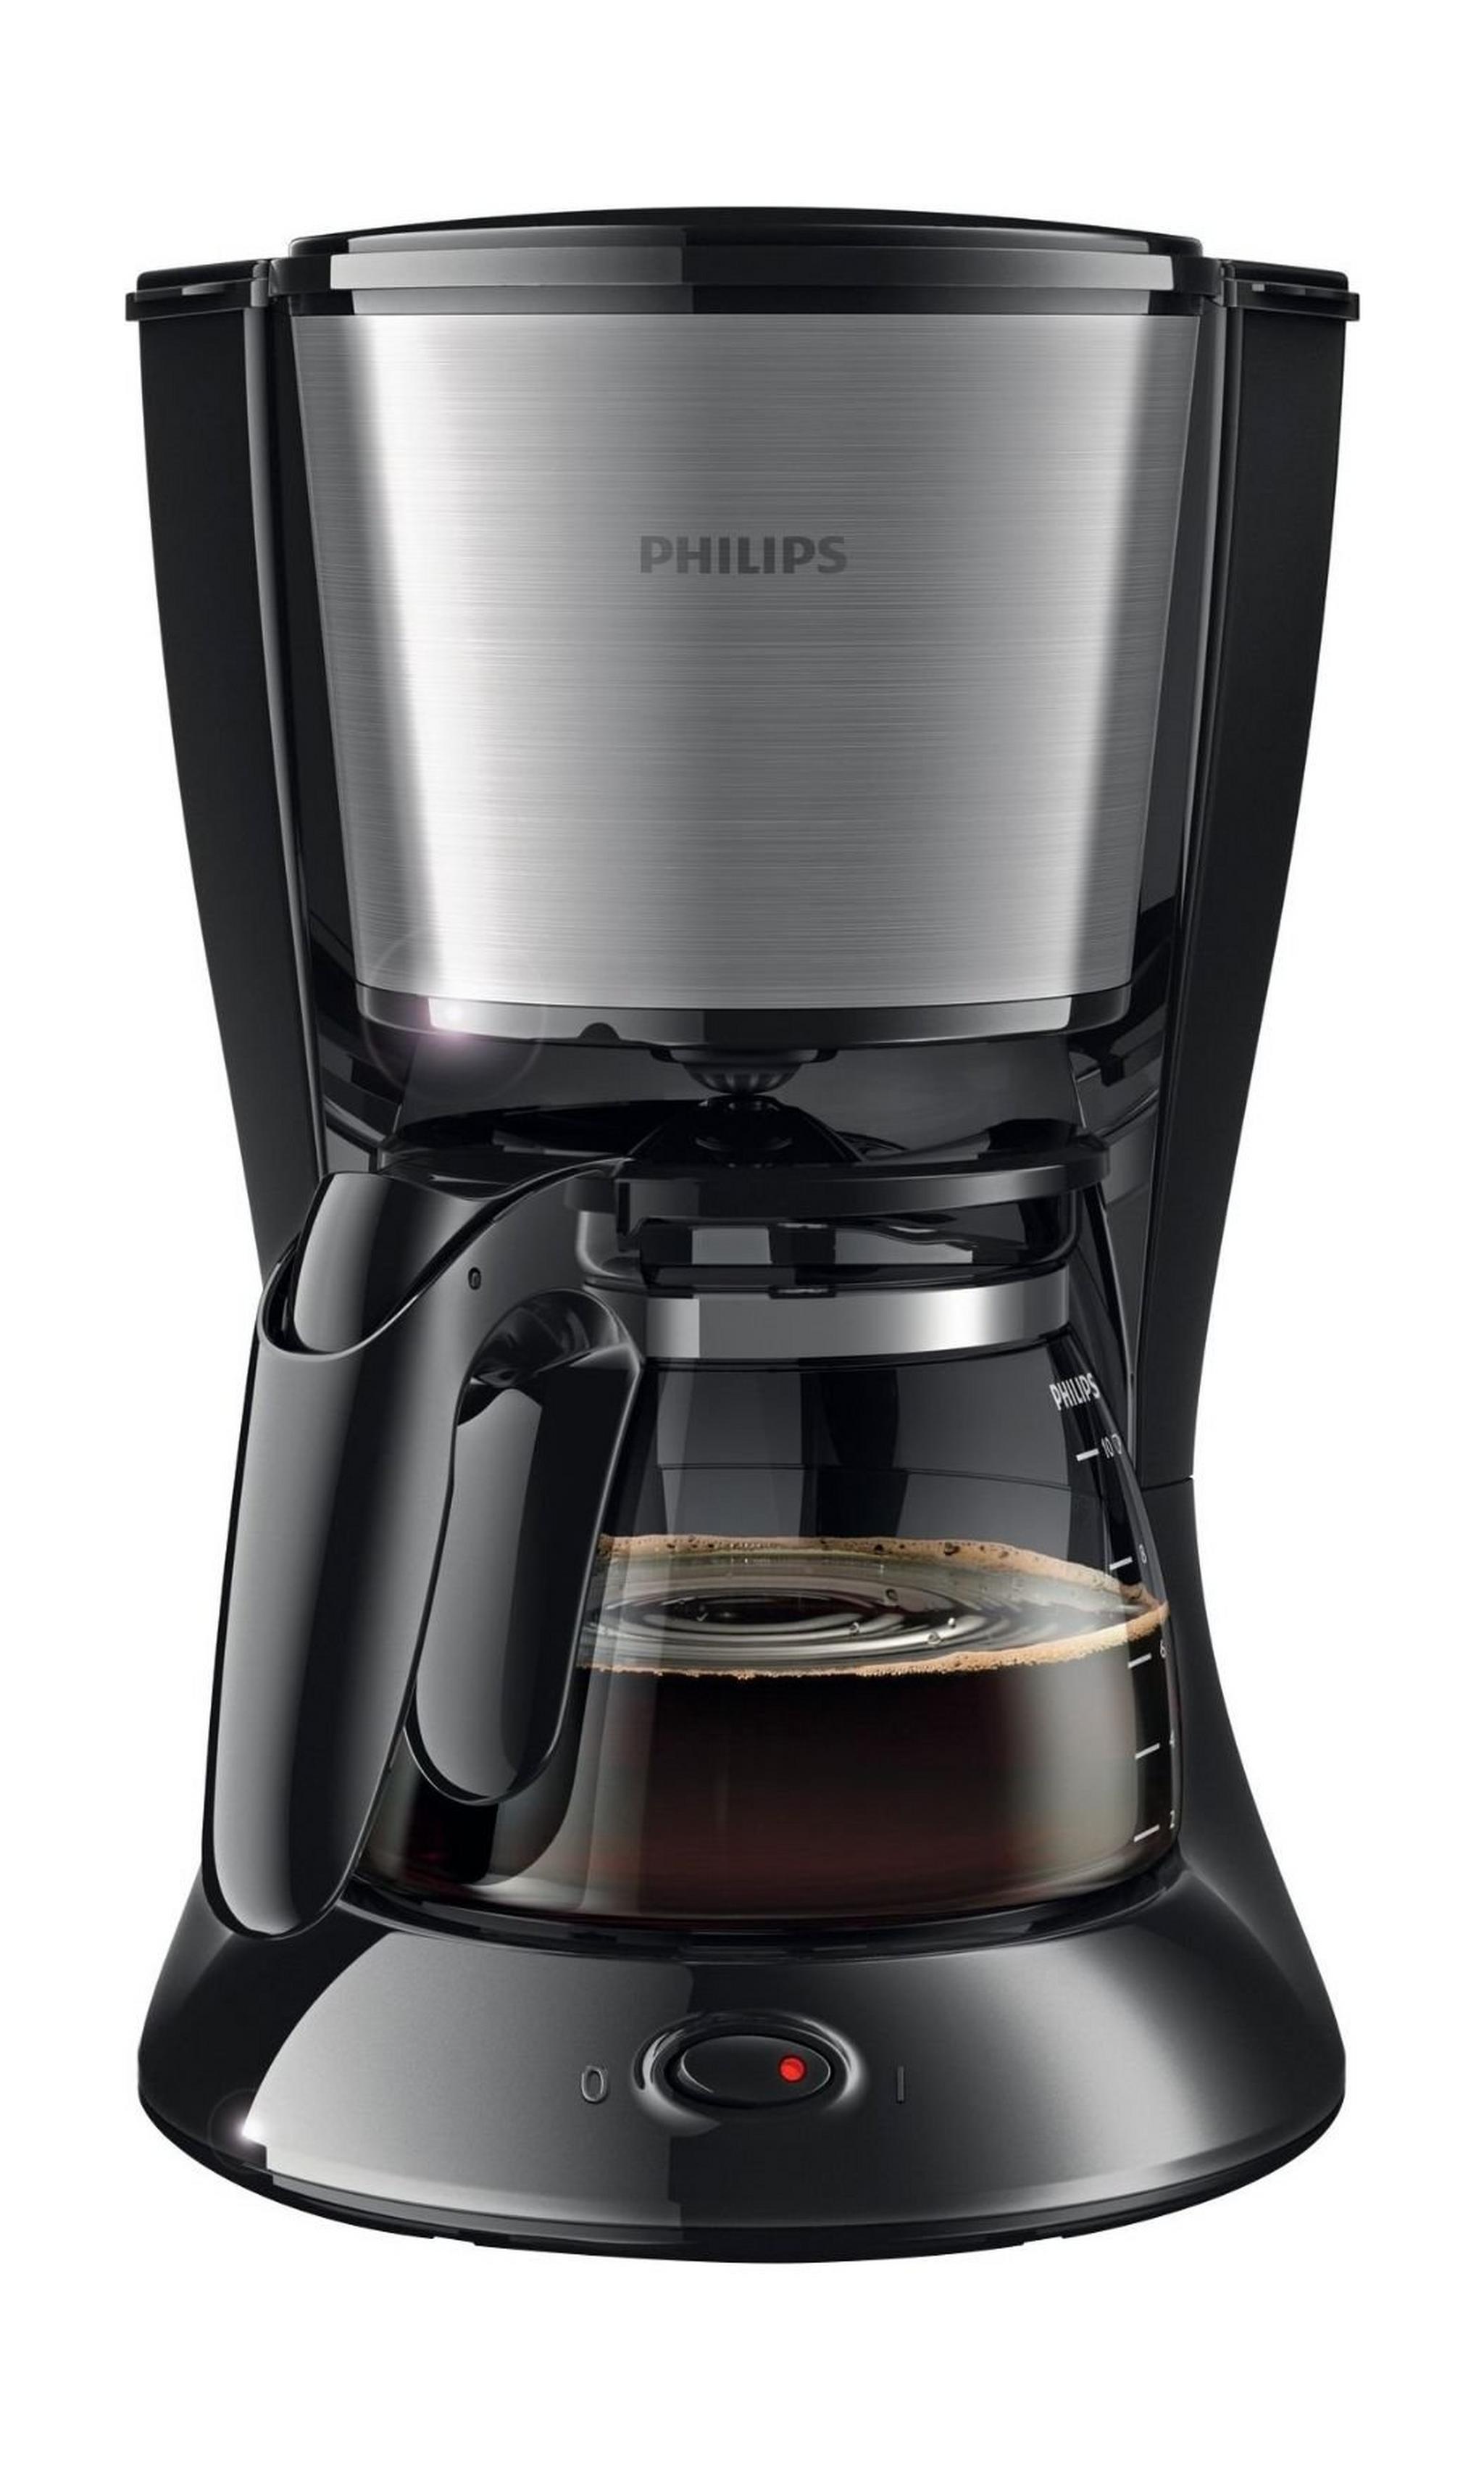 صانعة القهوة من فيليبس  HD7457/20 ١٠٠ واط - أسود